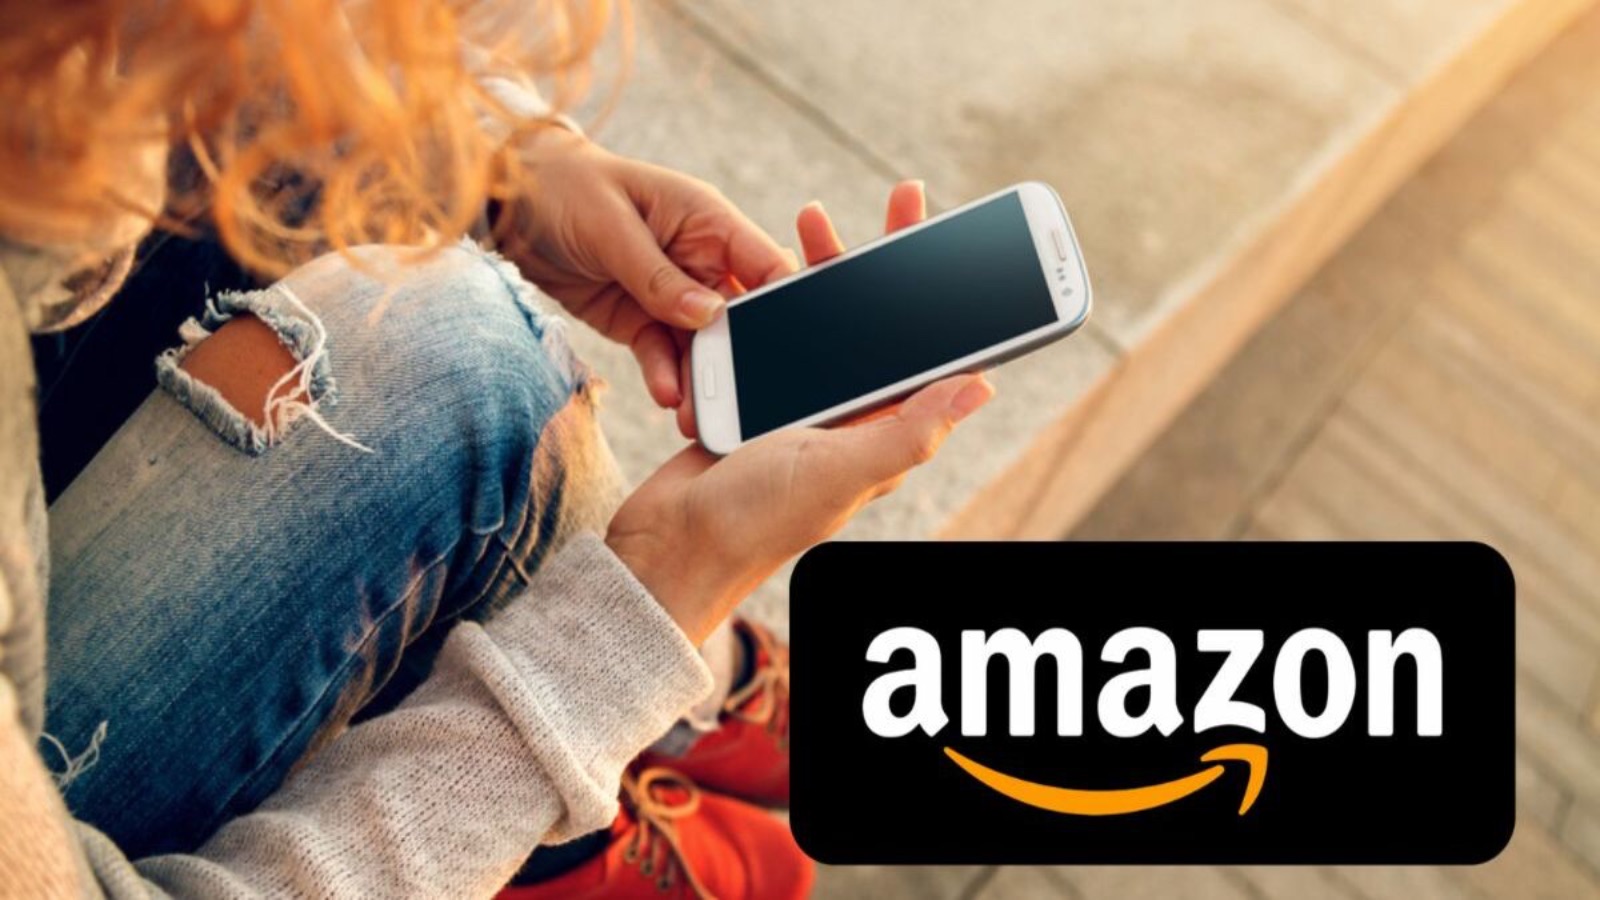 Amazon, offerte senza precedenti al 70% di sconto contro Unieuro